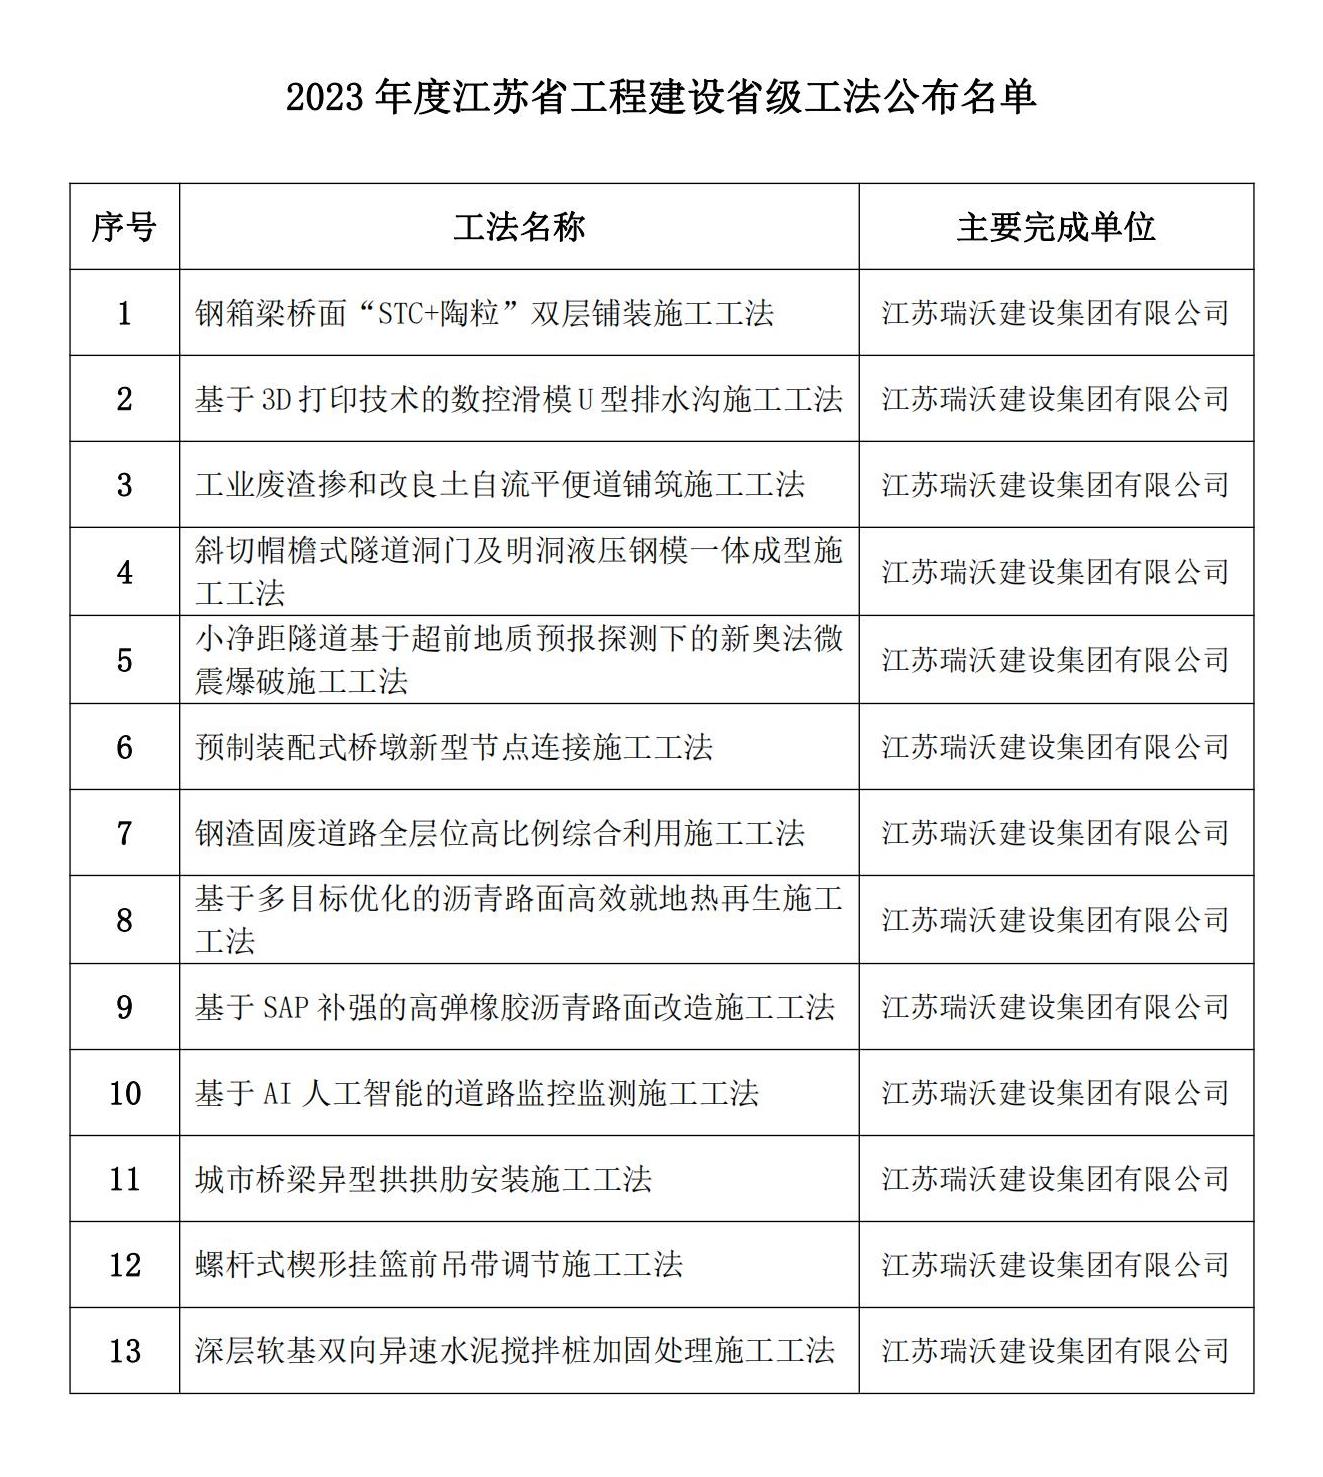 2023年度江苏省工程建设省级工法公布名单_00.jpg